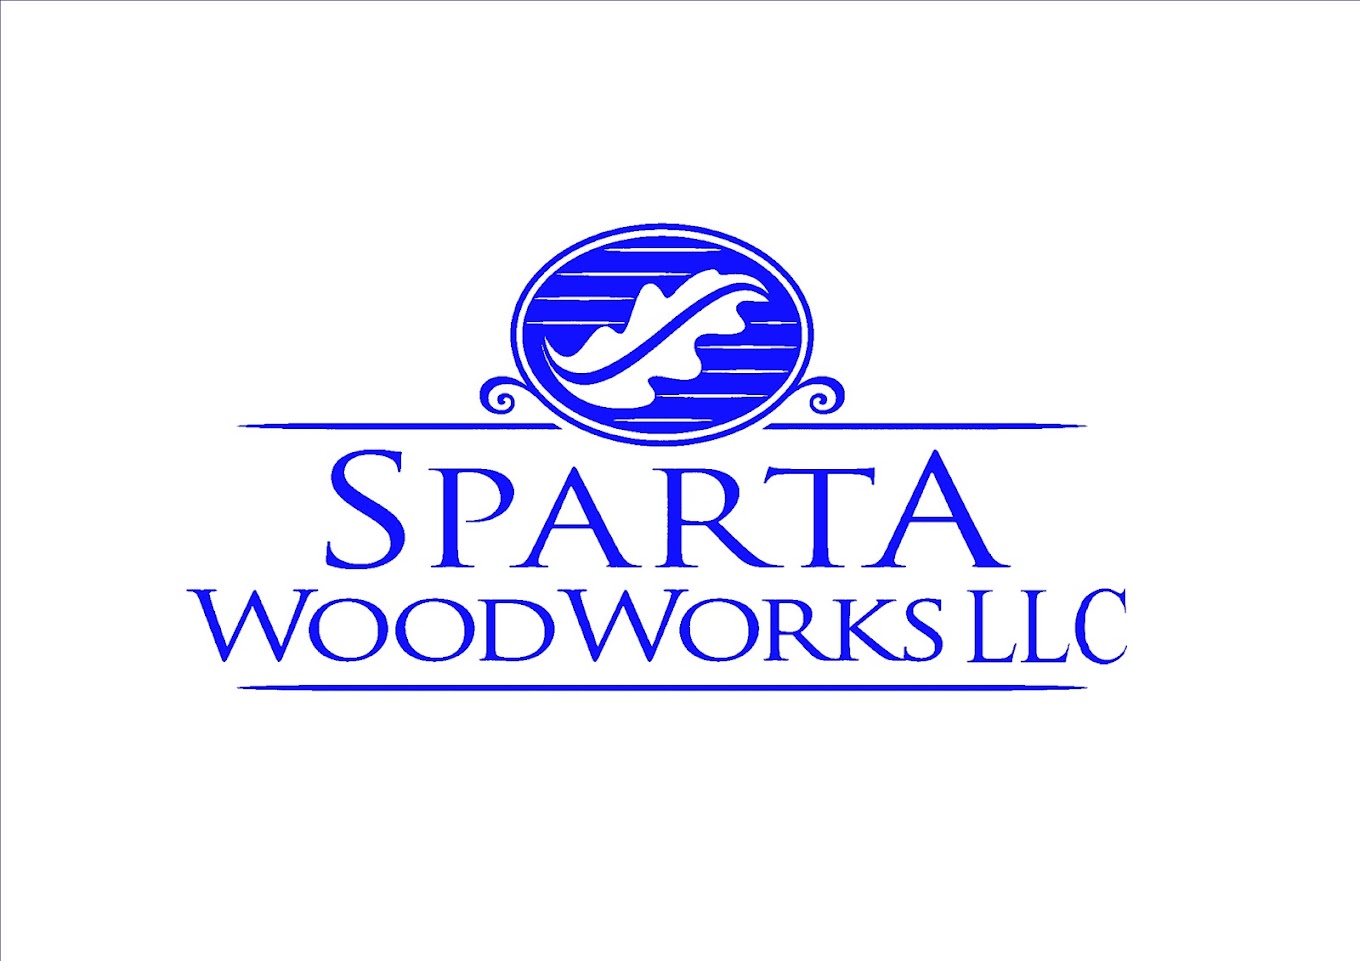 Sparta WoodWorks LLC